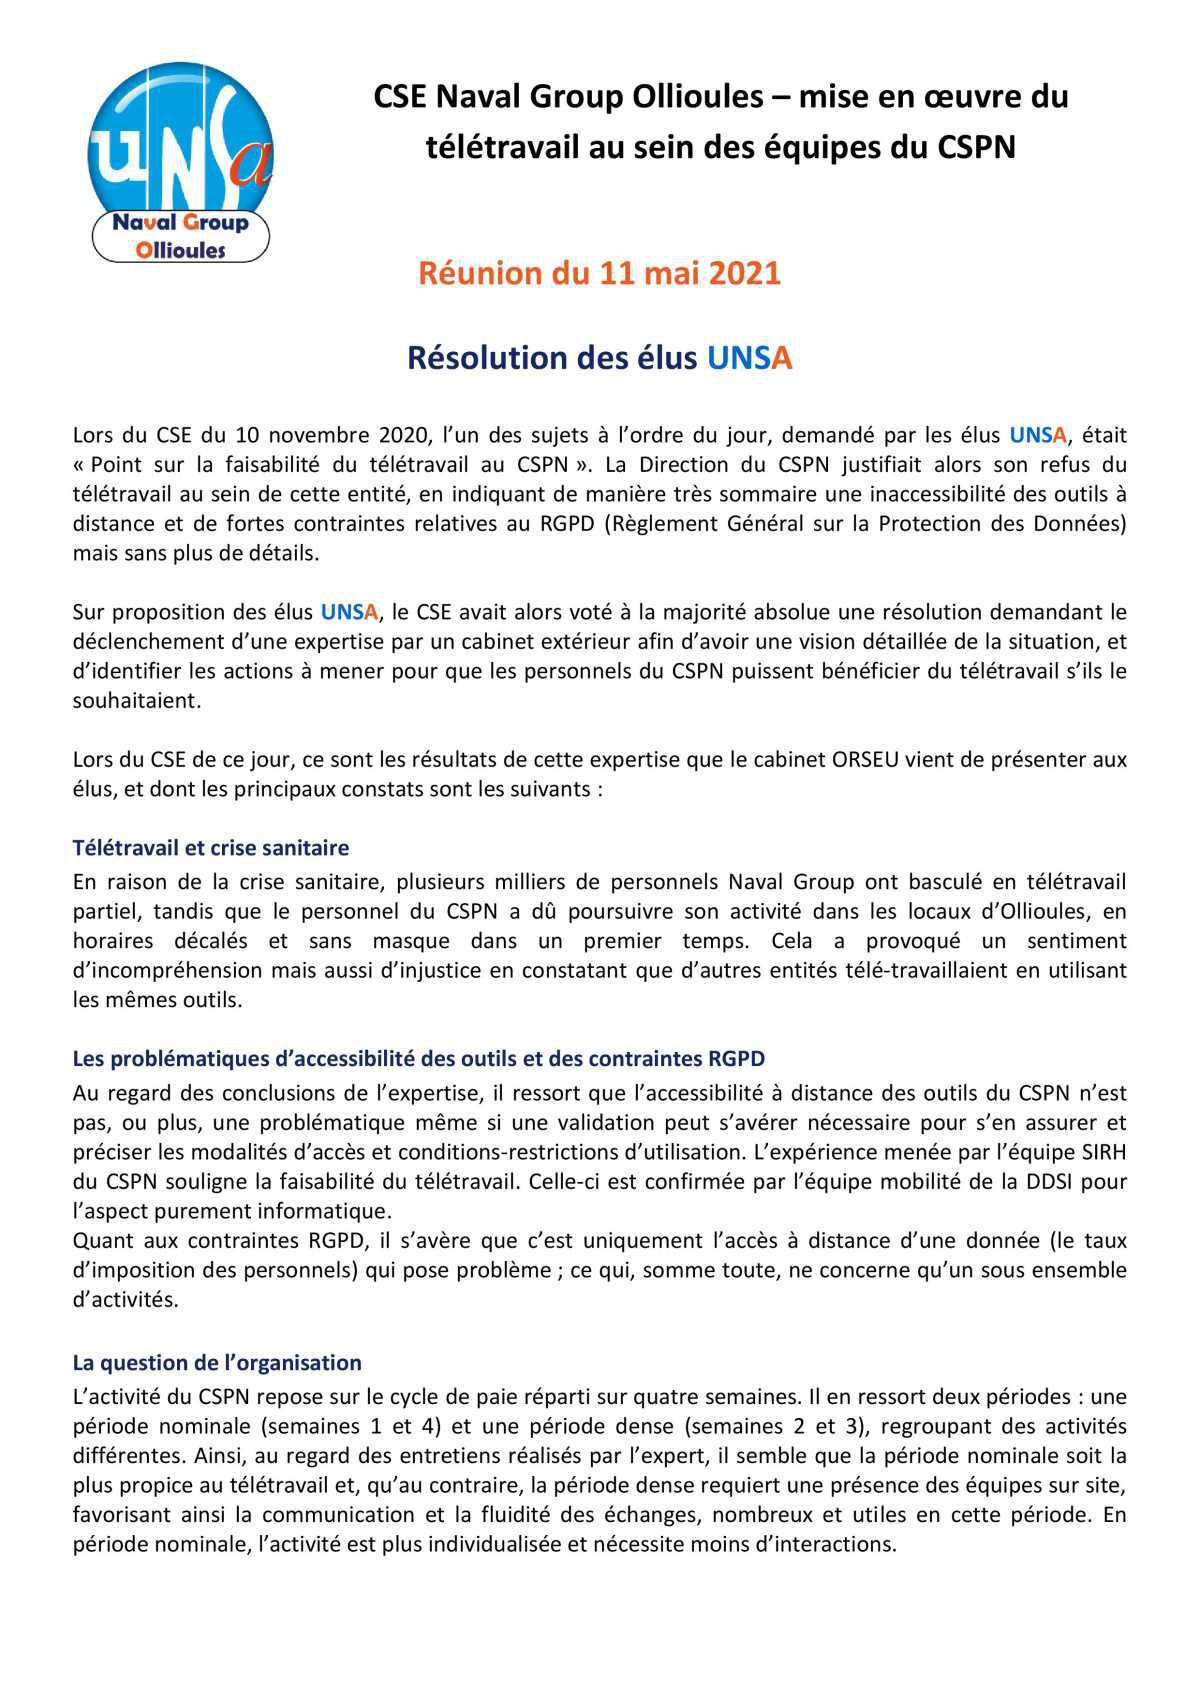 CSE d'Ollioules - réunion du 11 mai 2021 - résolution UNSA concernant le télétravail au CSPN